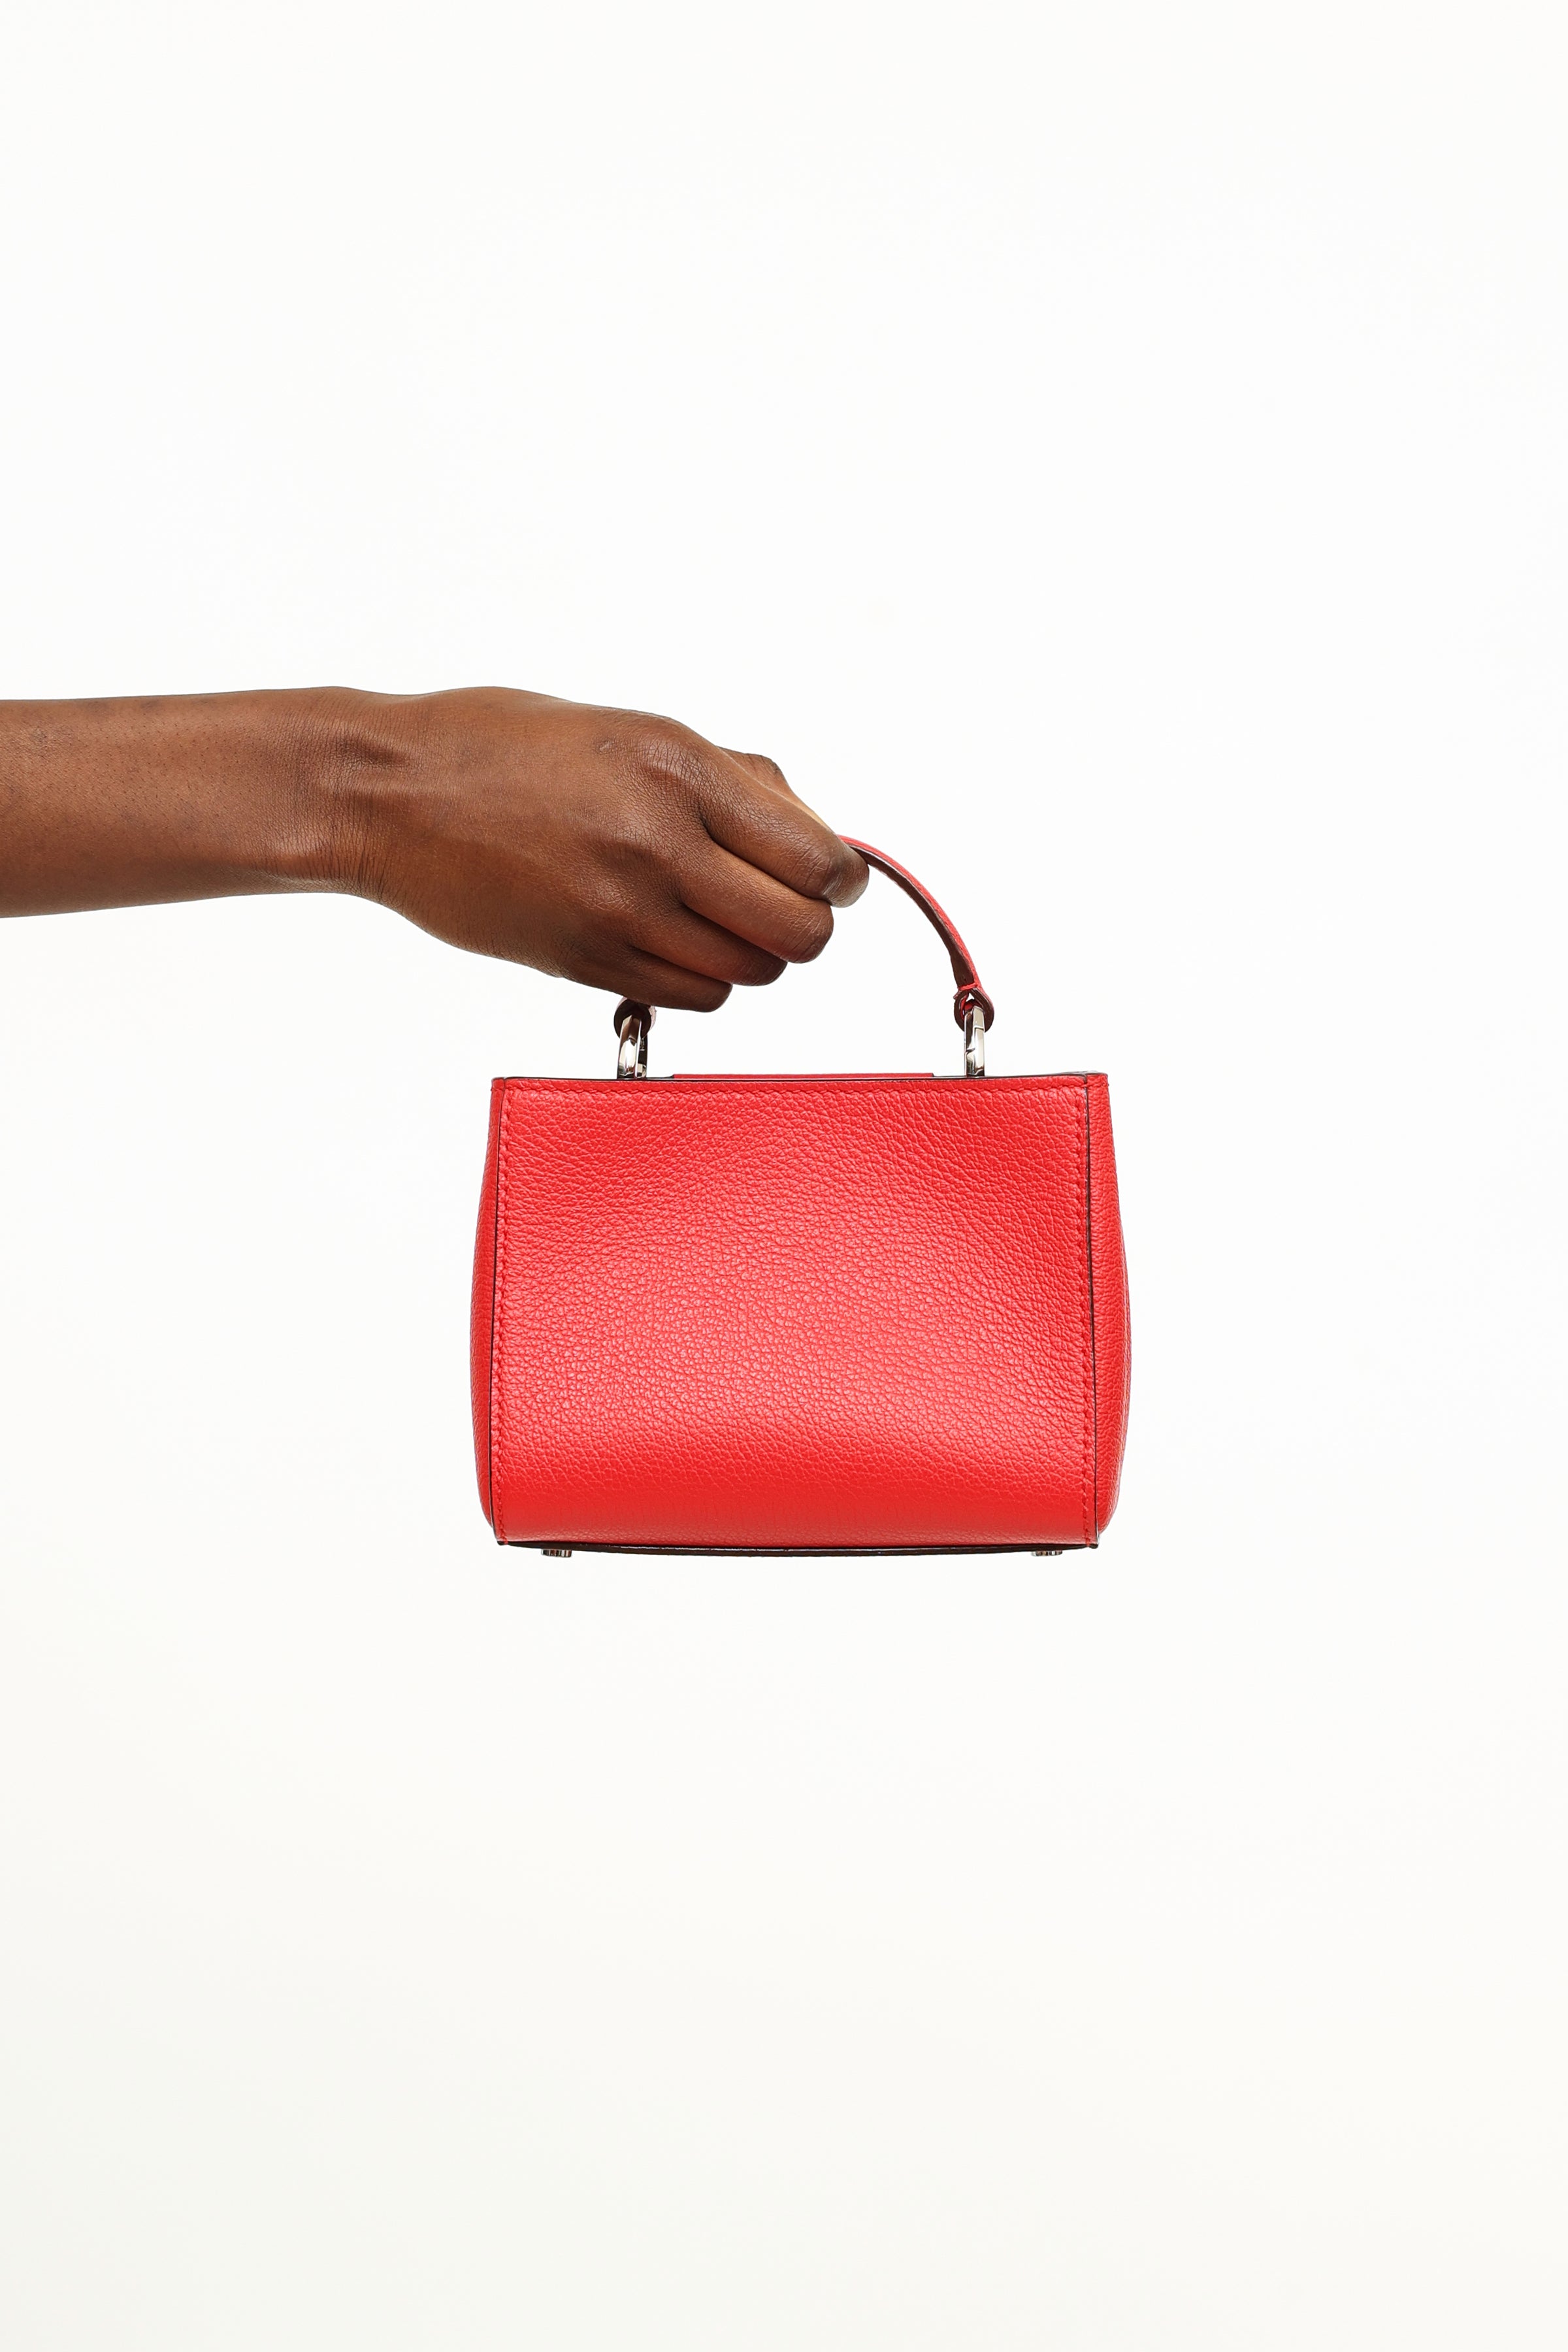 Jimmy Choo Varenne Embossed Leather Shoulder Bag - Red Shoulder Bags,  Handbags - JIM357261 | The RealReal